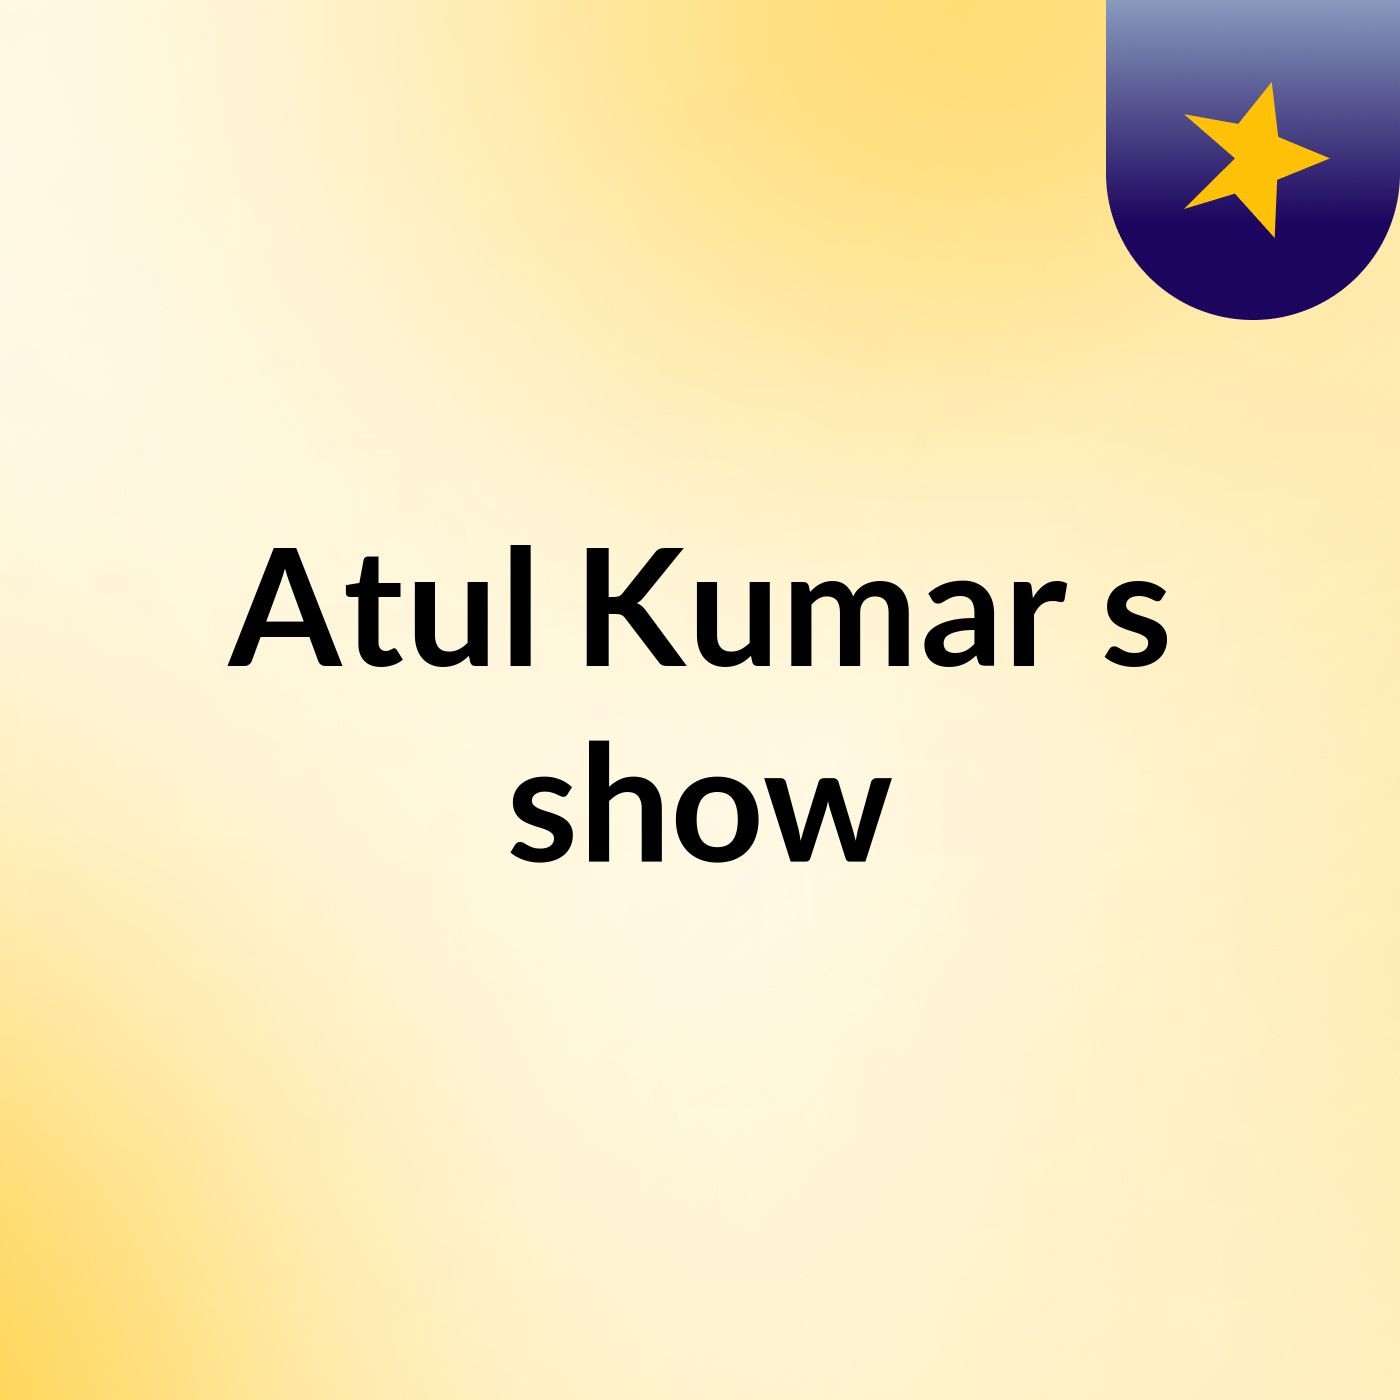 Atul Kumar's show